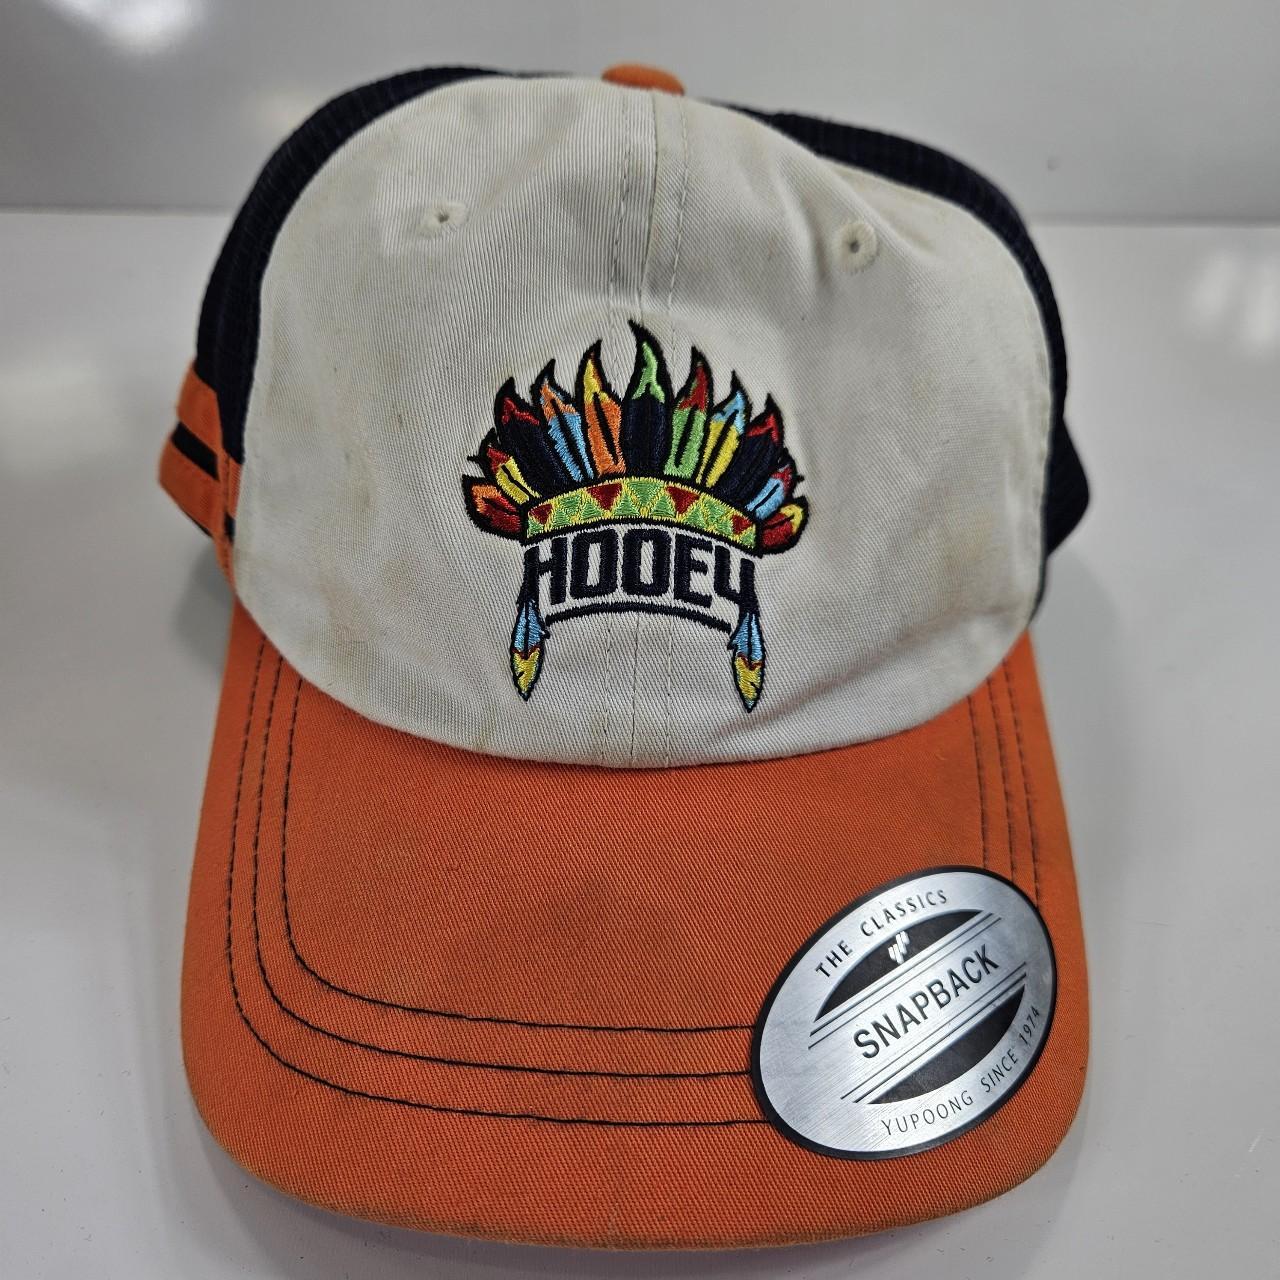 Hooey Men's Hat